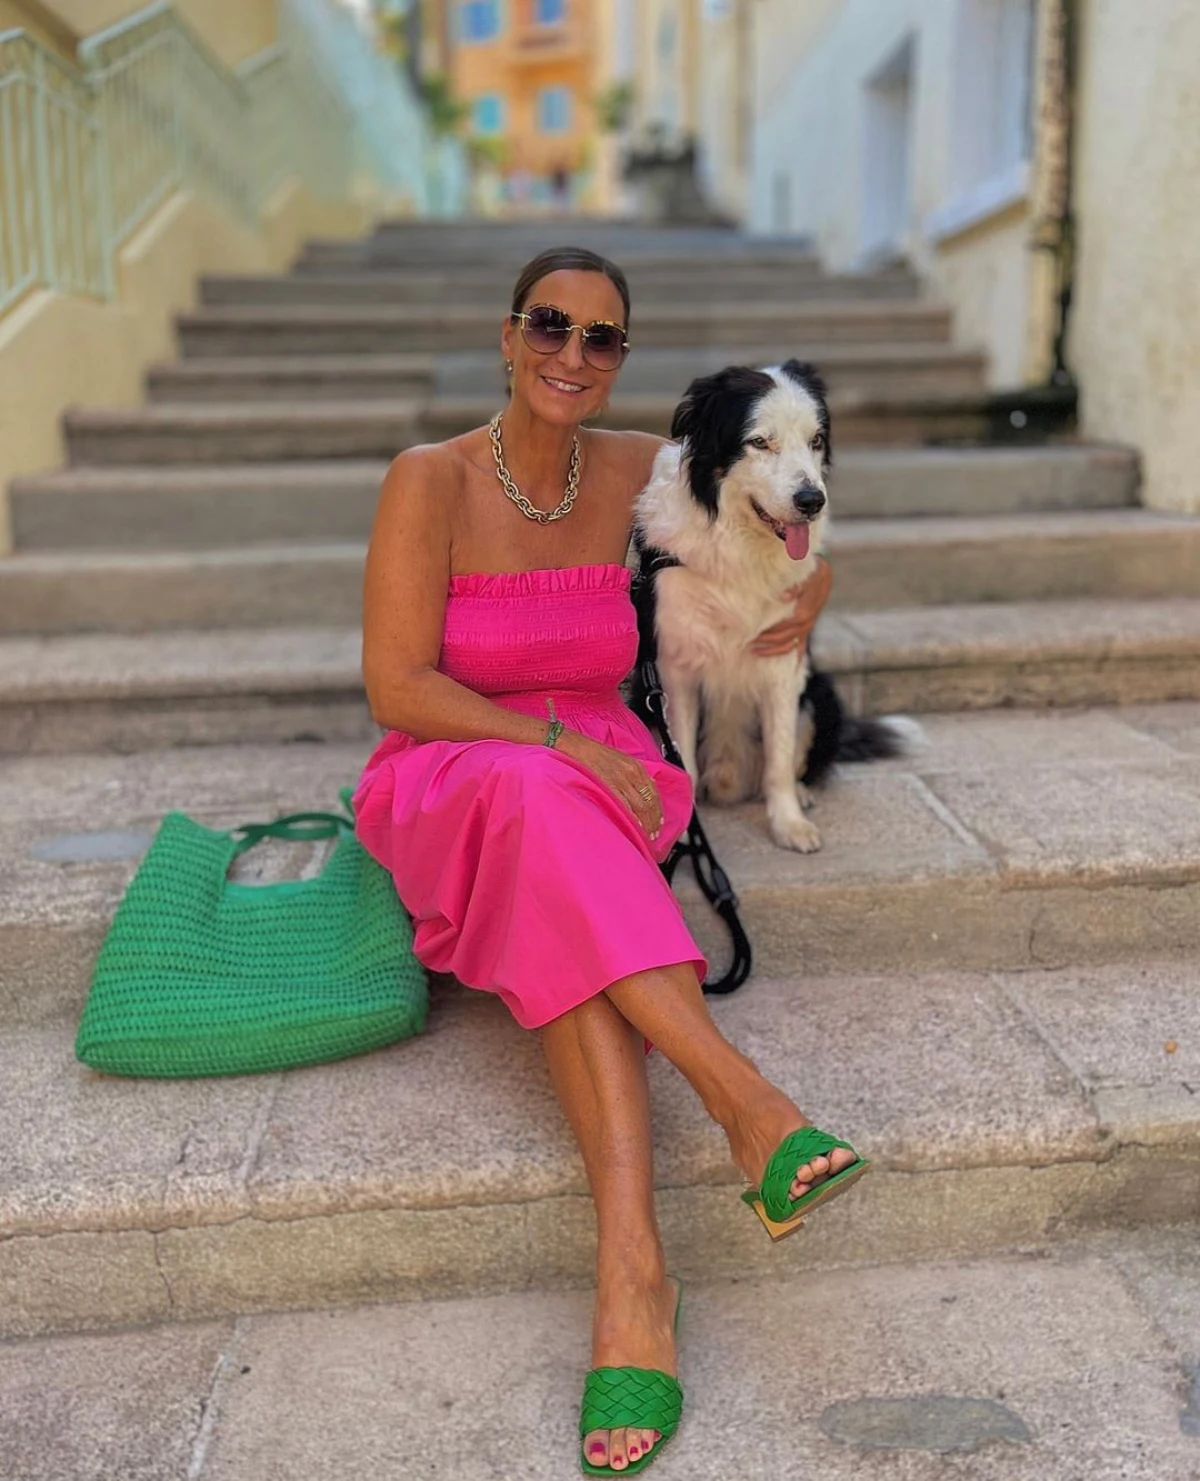 association de la couleur fuchsia au vert femme 60 ans marches chien